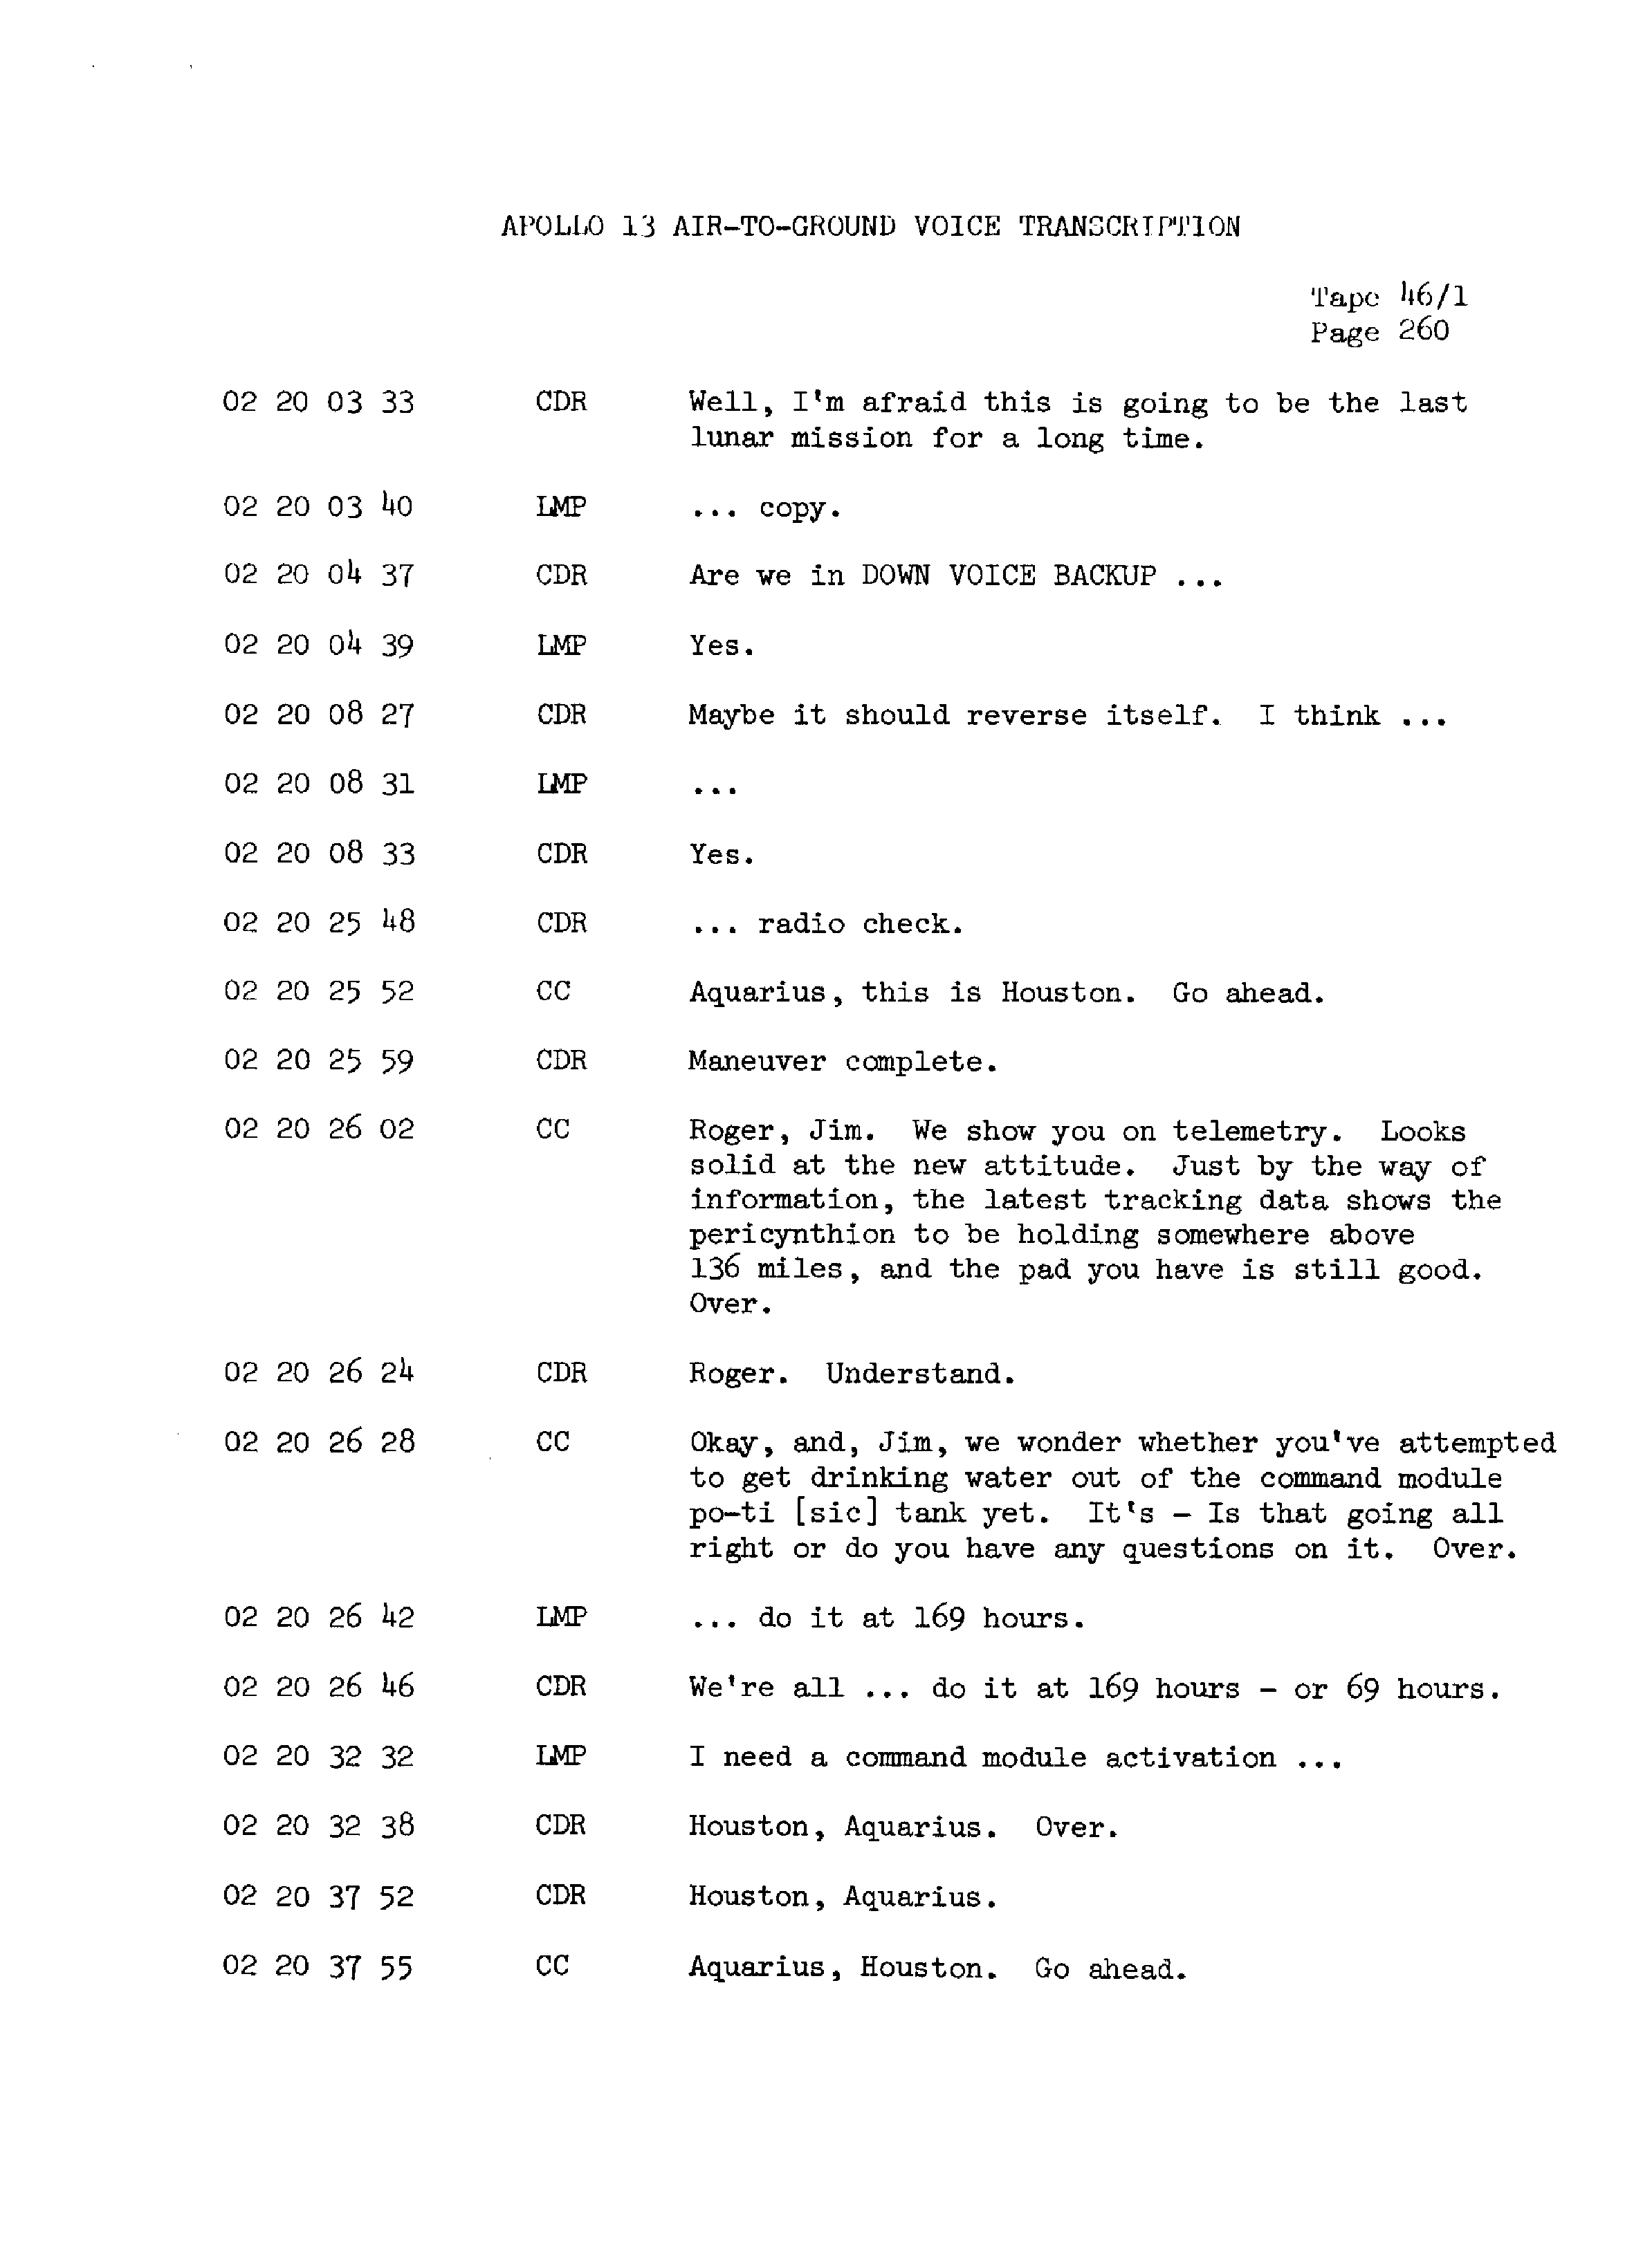 Page 267 of Apollo 13’s original transcript